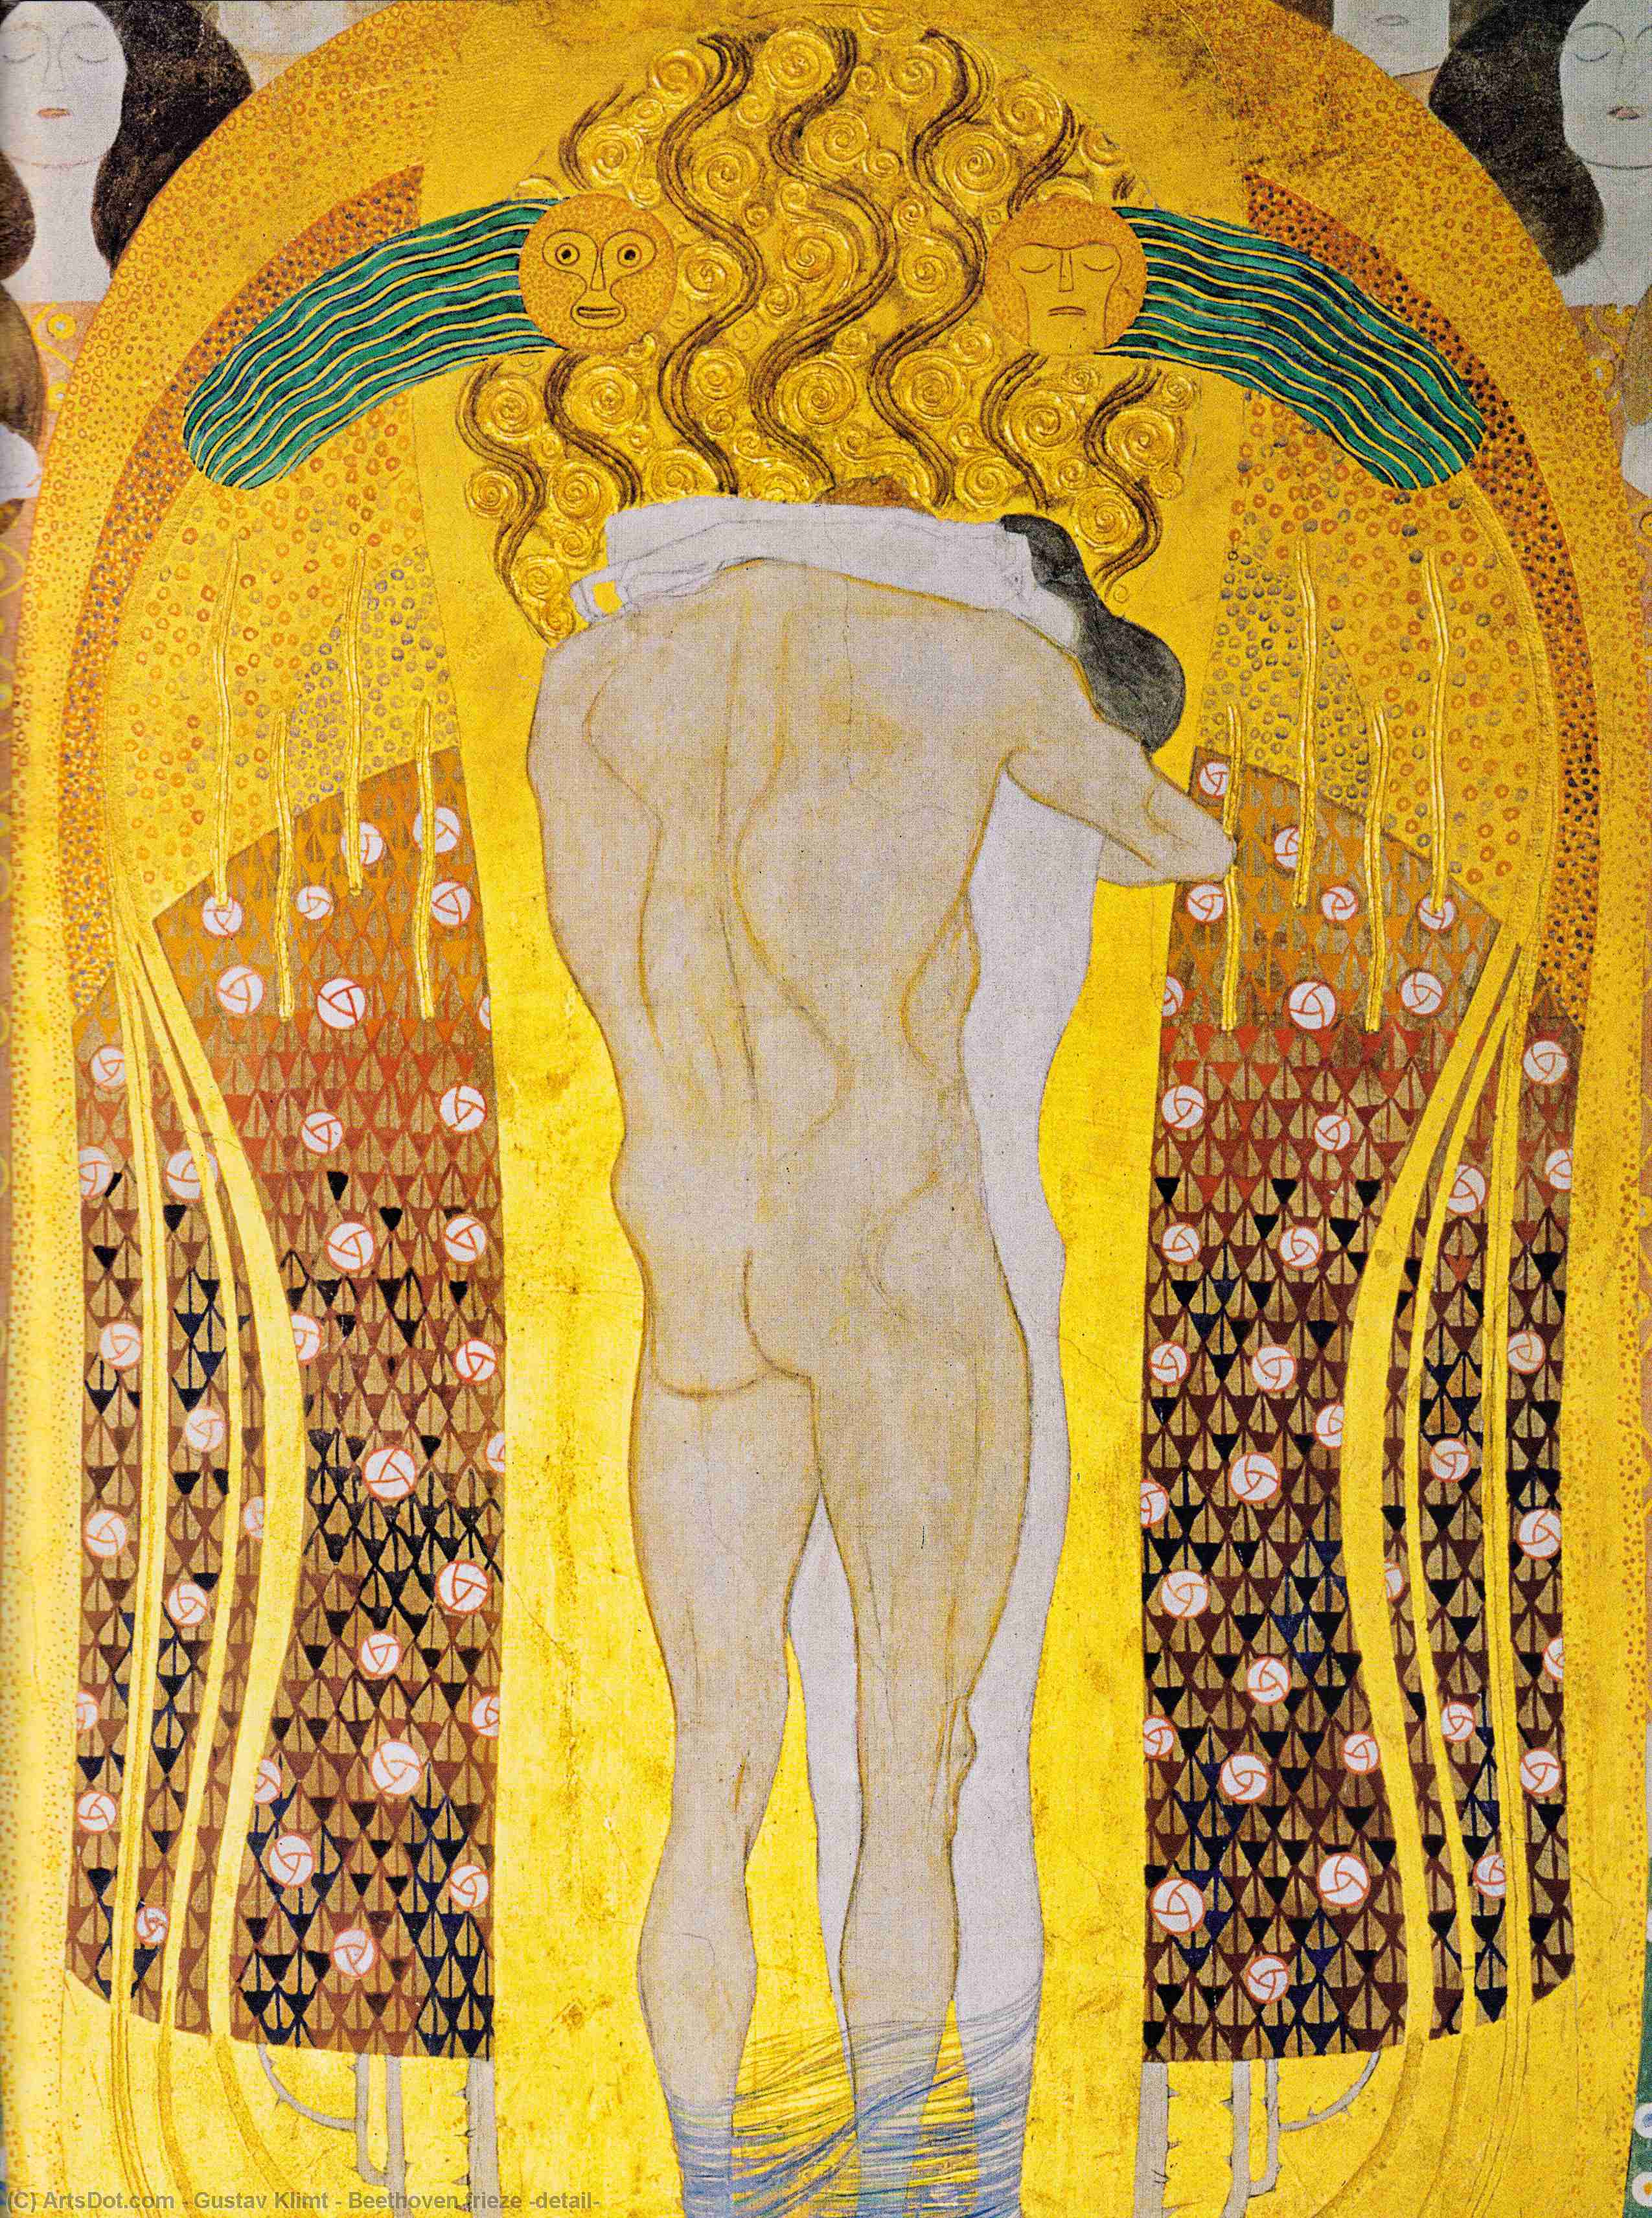 Wikioo.org - Bách khoa toàn thư về mỹ thuật - Vẽ tranh, Tác phẩm nghệ thuật Gustav Klimt - Beethoven frieze (detail)